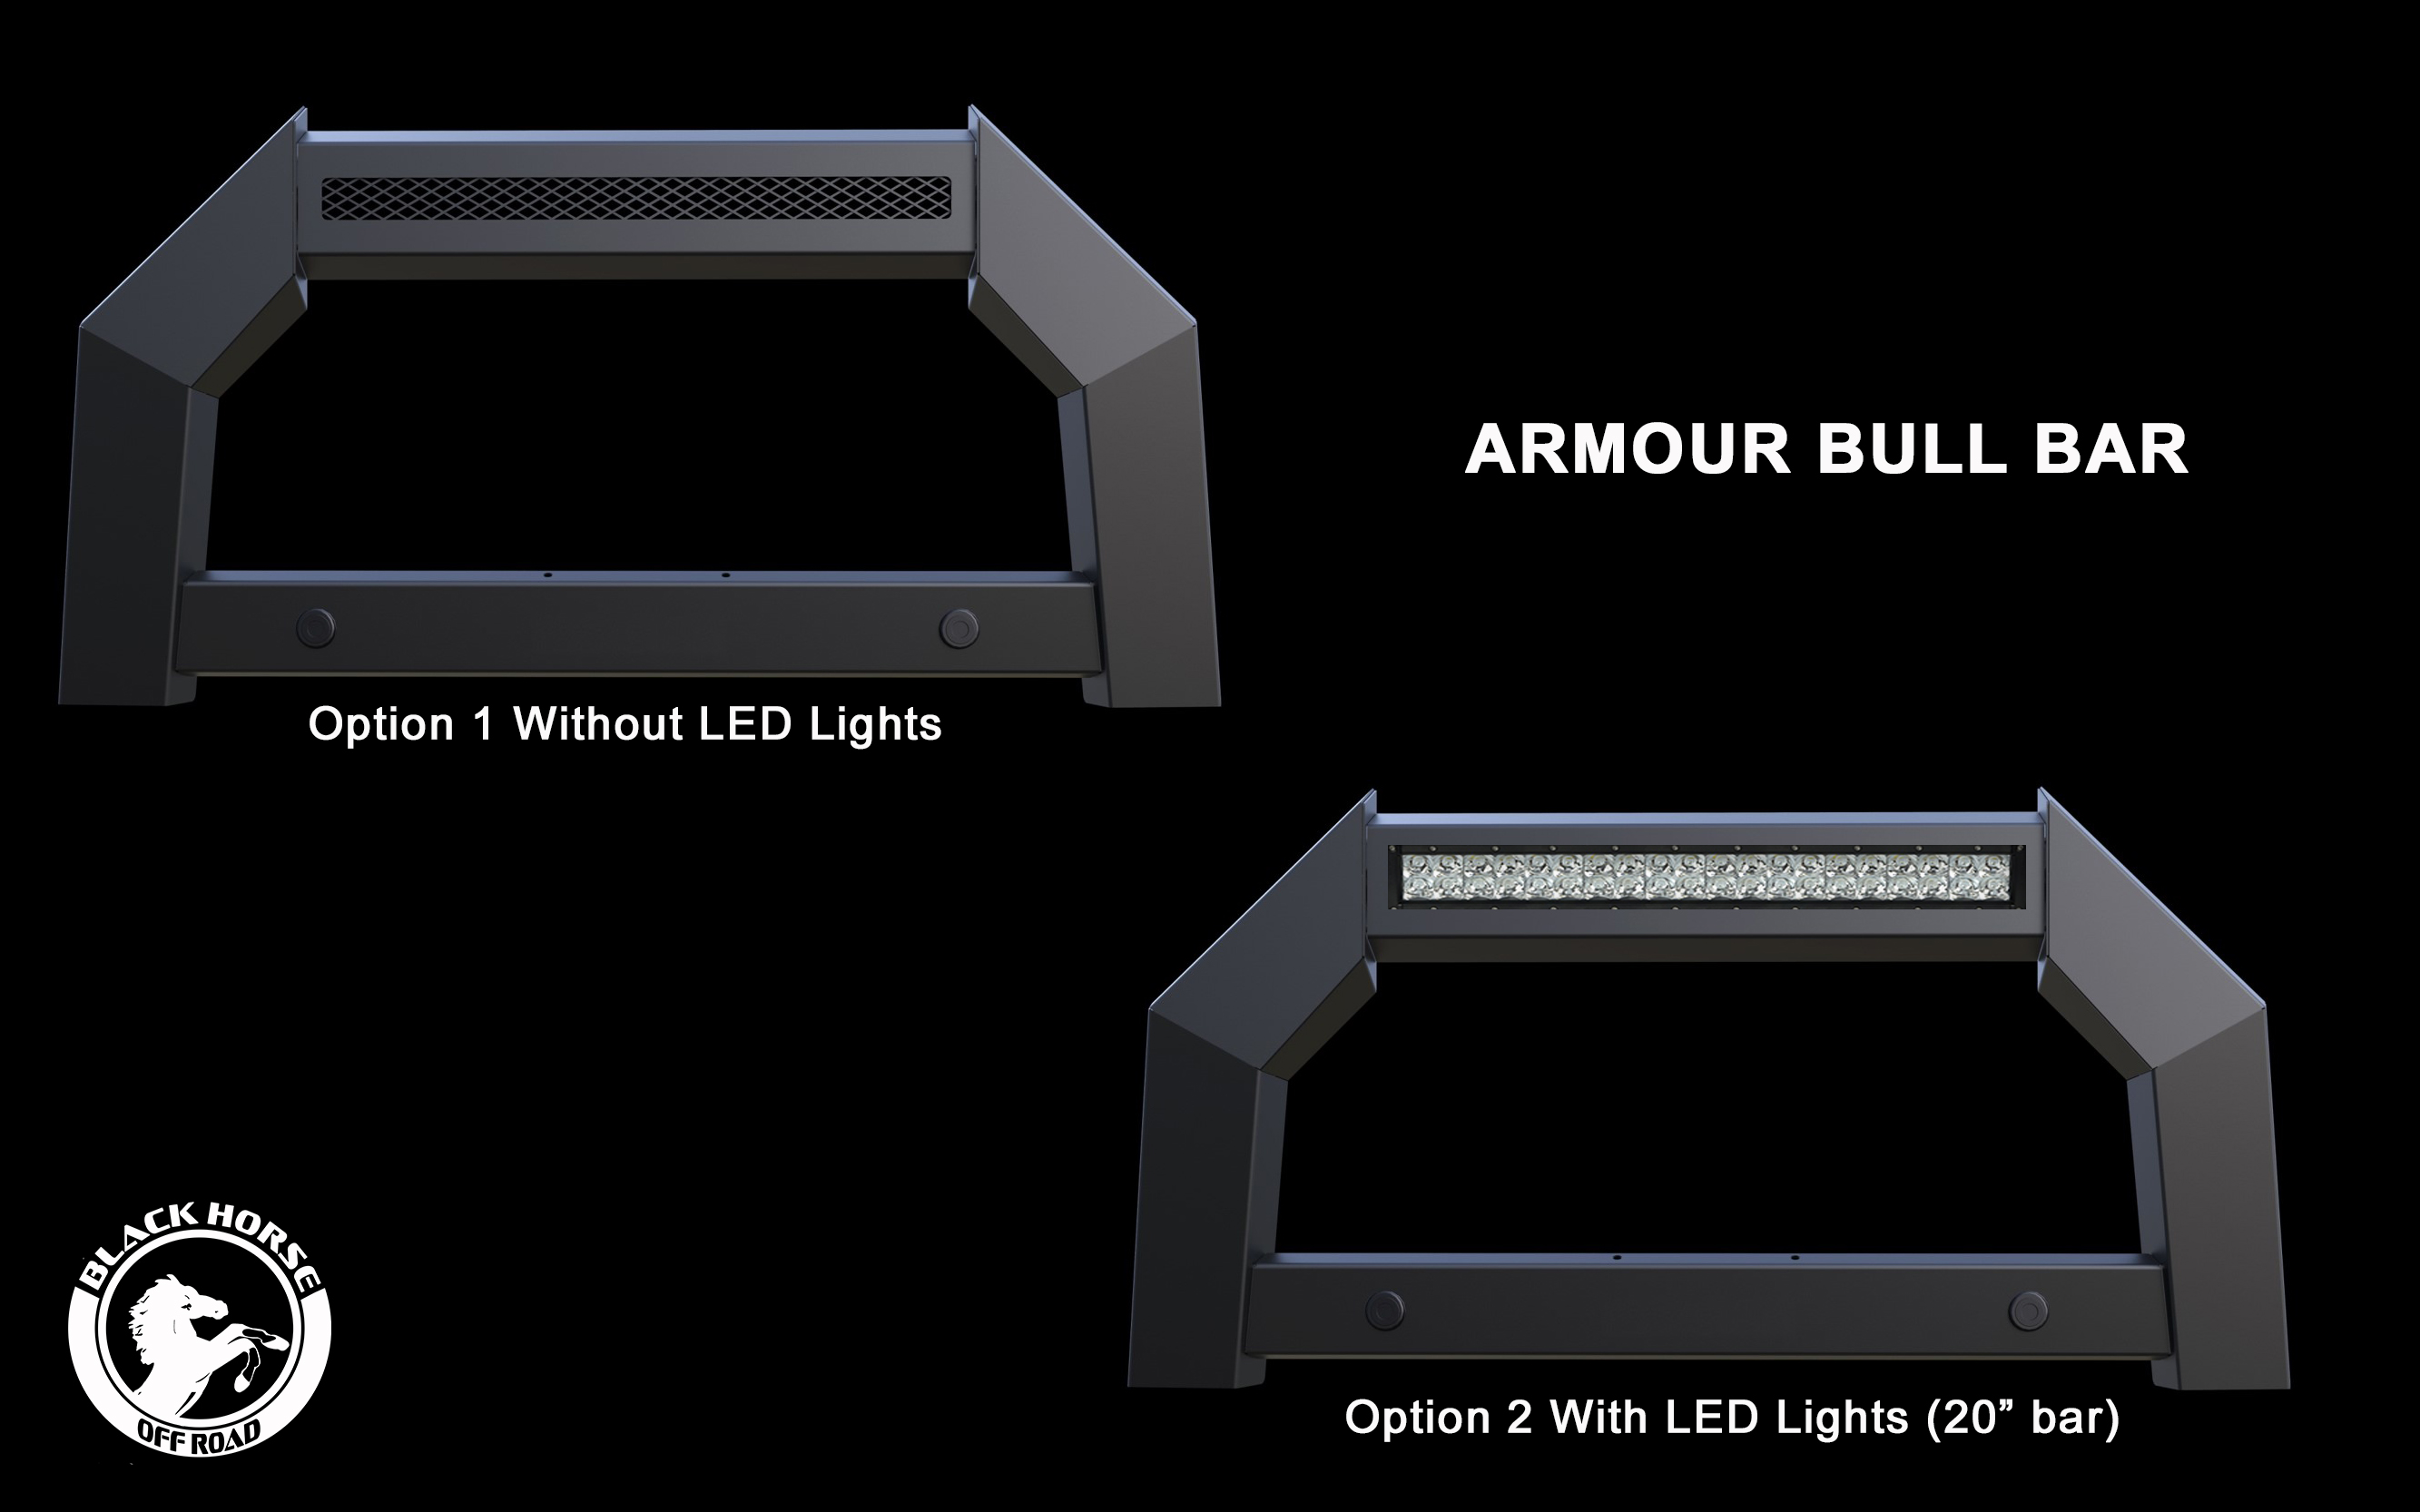 Armour Bull Bar with lights